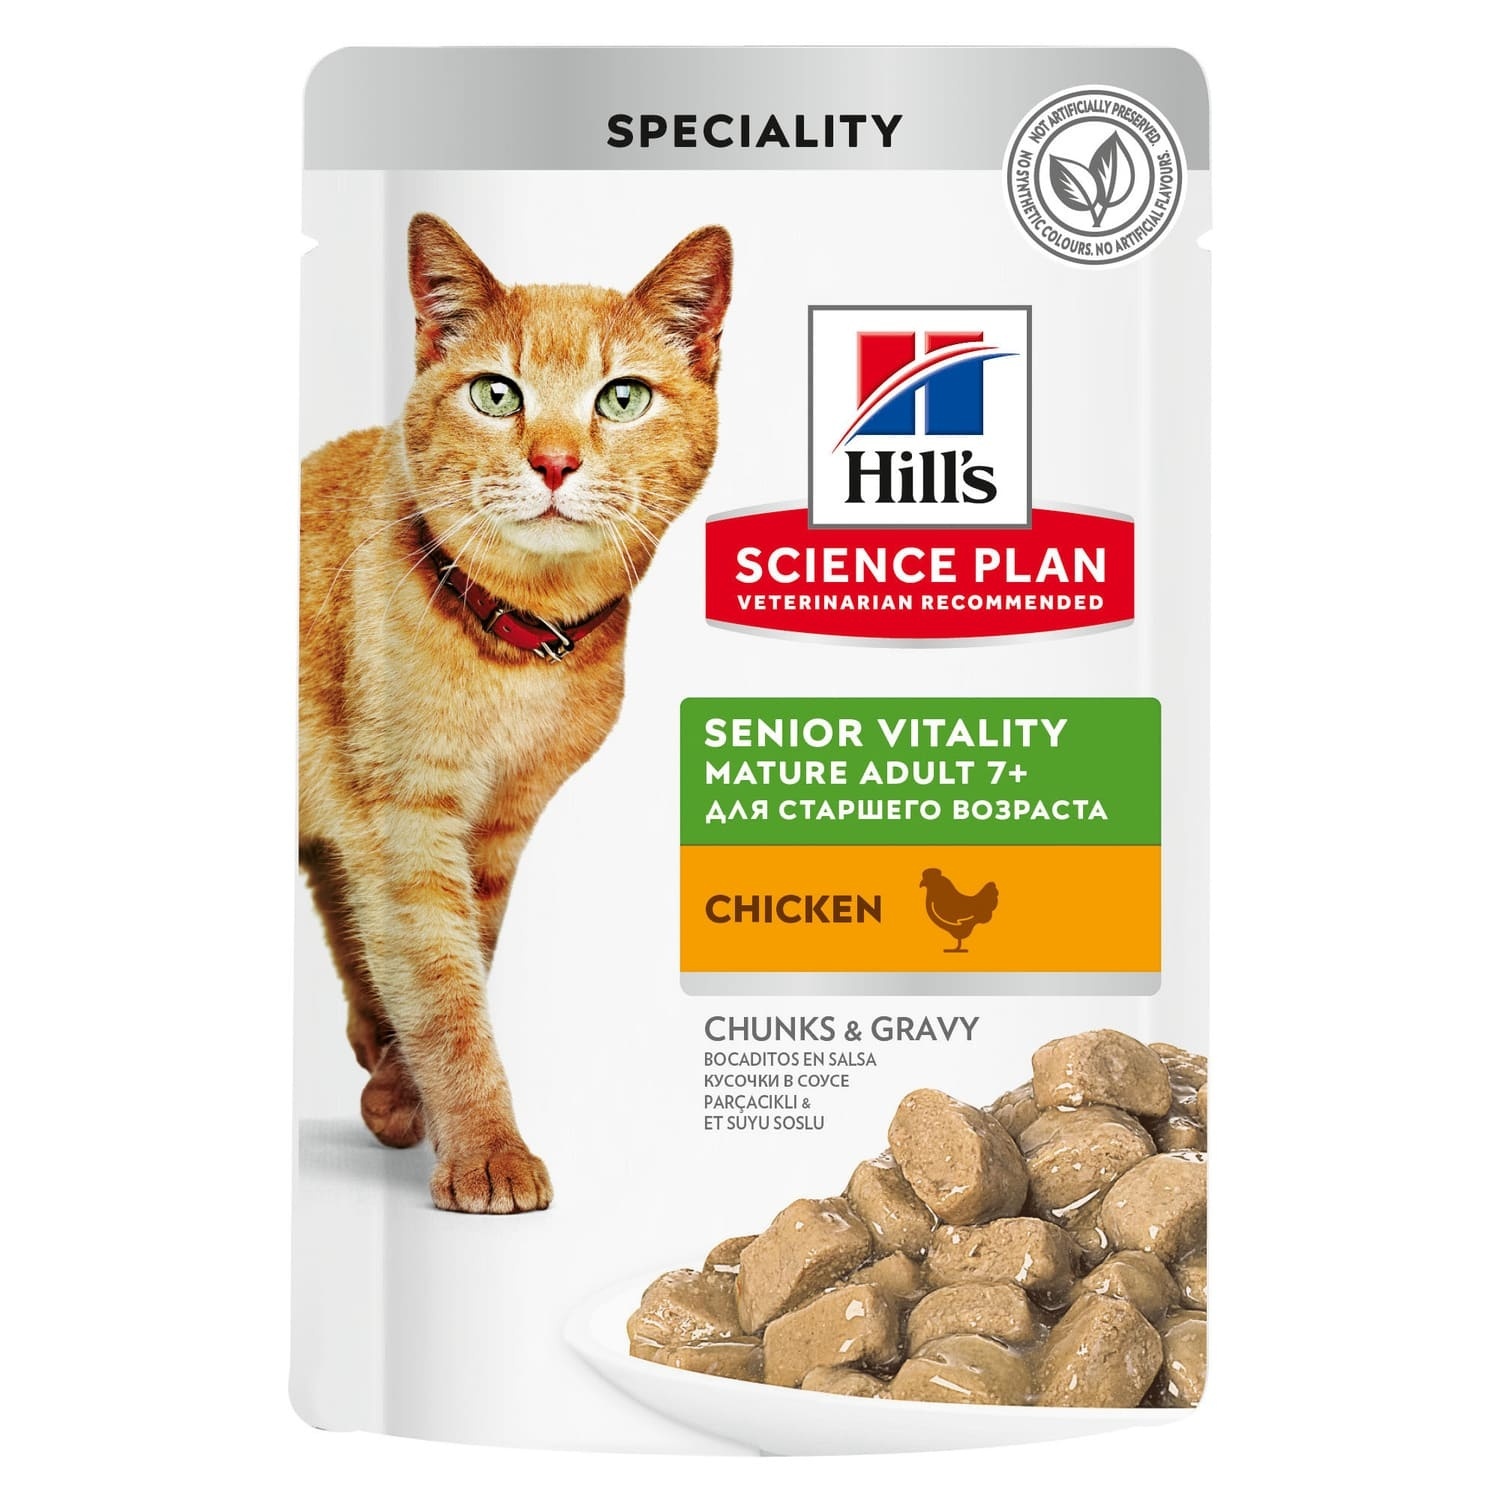 Hill's консервы science Plan для пожилых кошек (7+) для поддержания активности и жизненной энергии, пауч с курицей (1,02 кг)